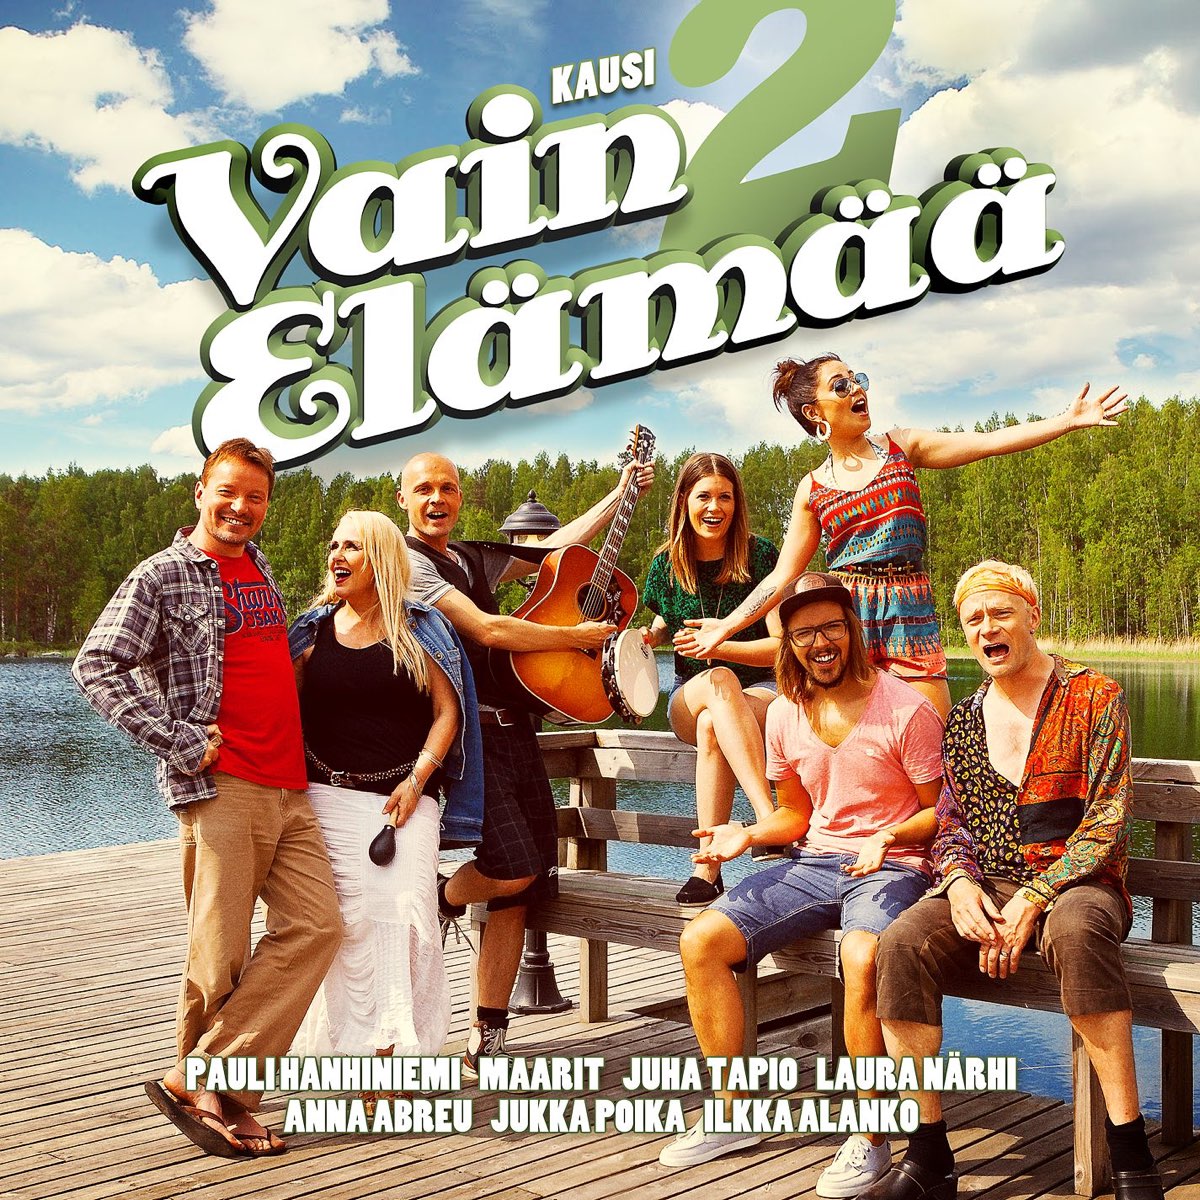 Vain Elämää - Kausi 2 de Vários intérpretes no Apple Music